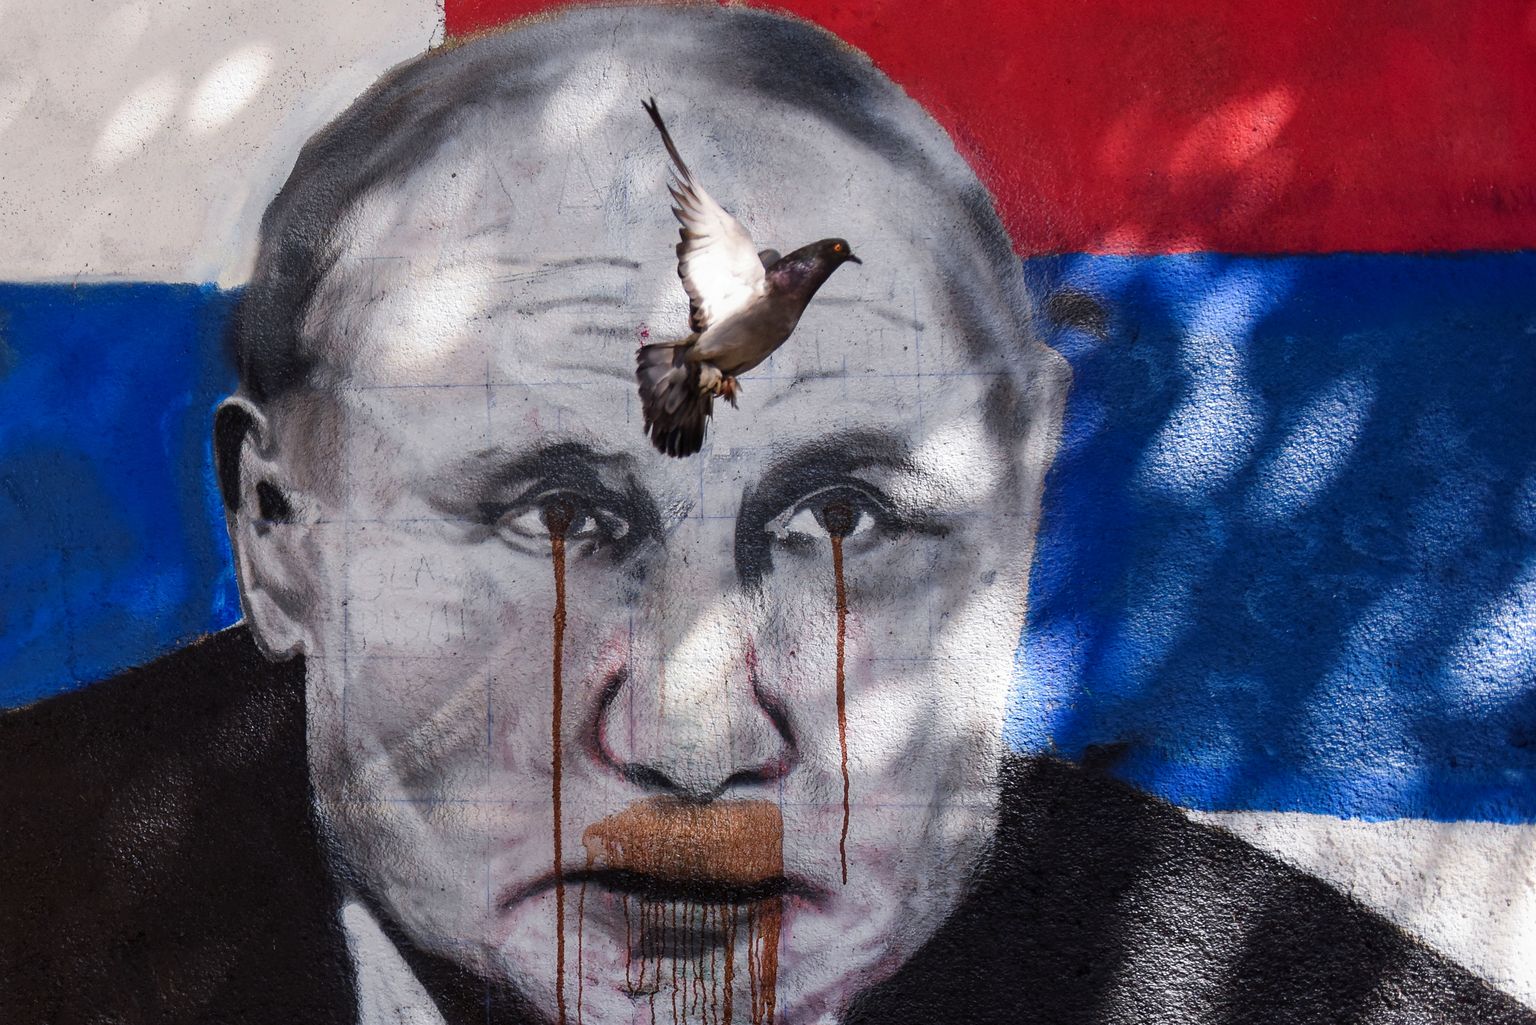 Голубь летит над графити с изображением президента РФ Владимира Путина. Картина была испорчена красной краской из баллончика после вторжения России в Украину. Белград, Сербия, июнь 2022 года